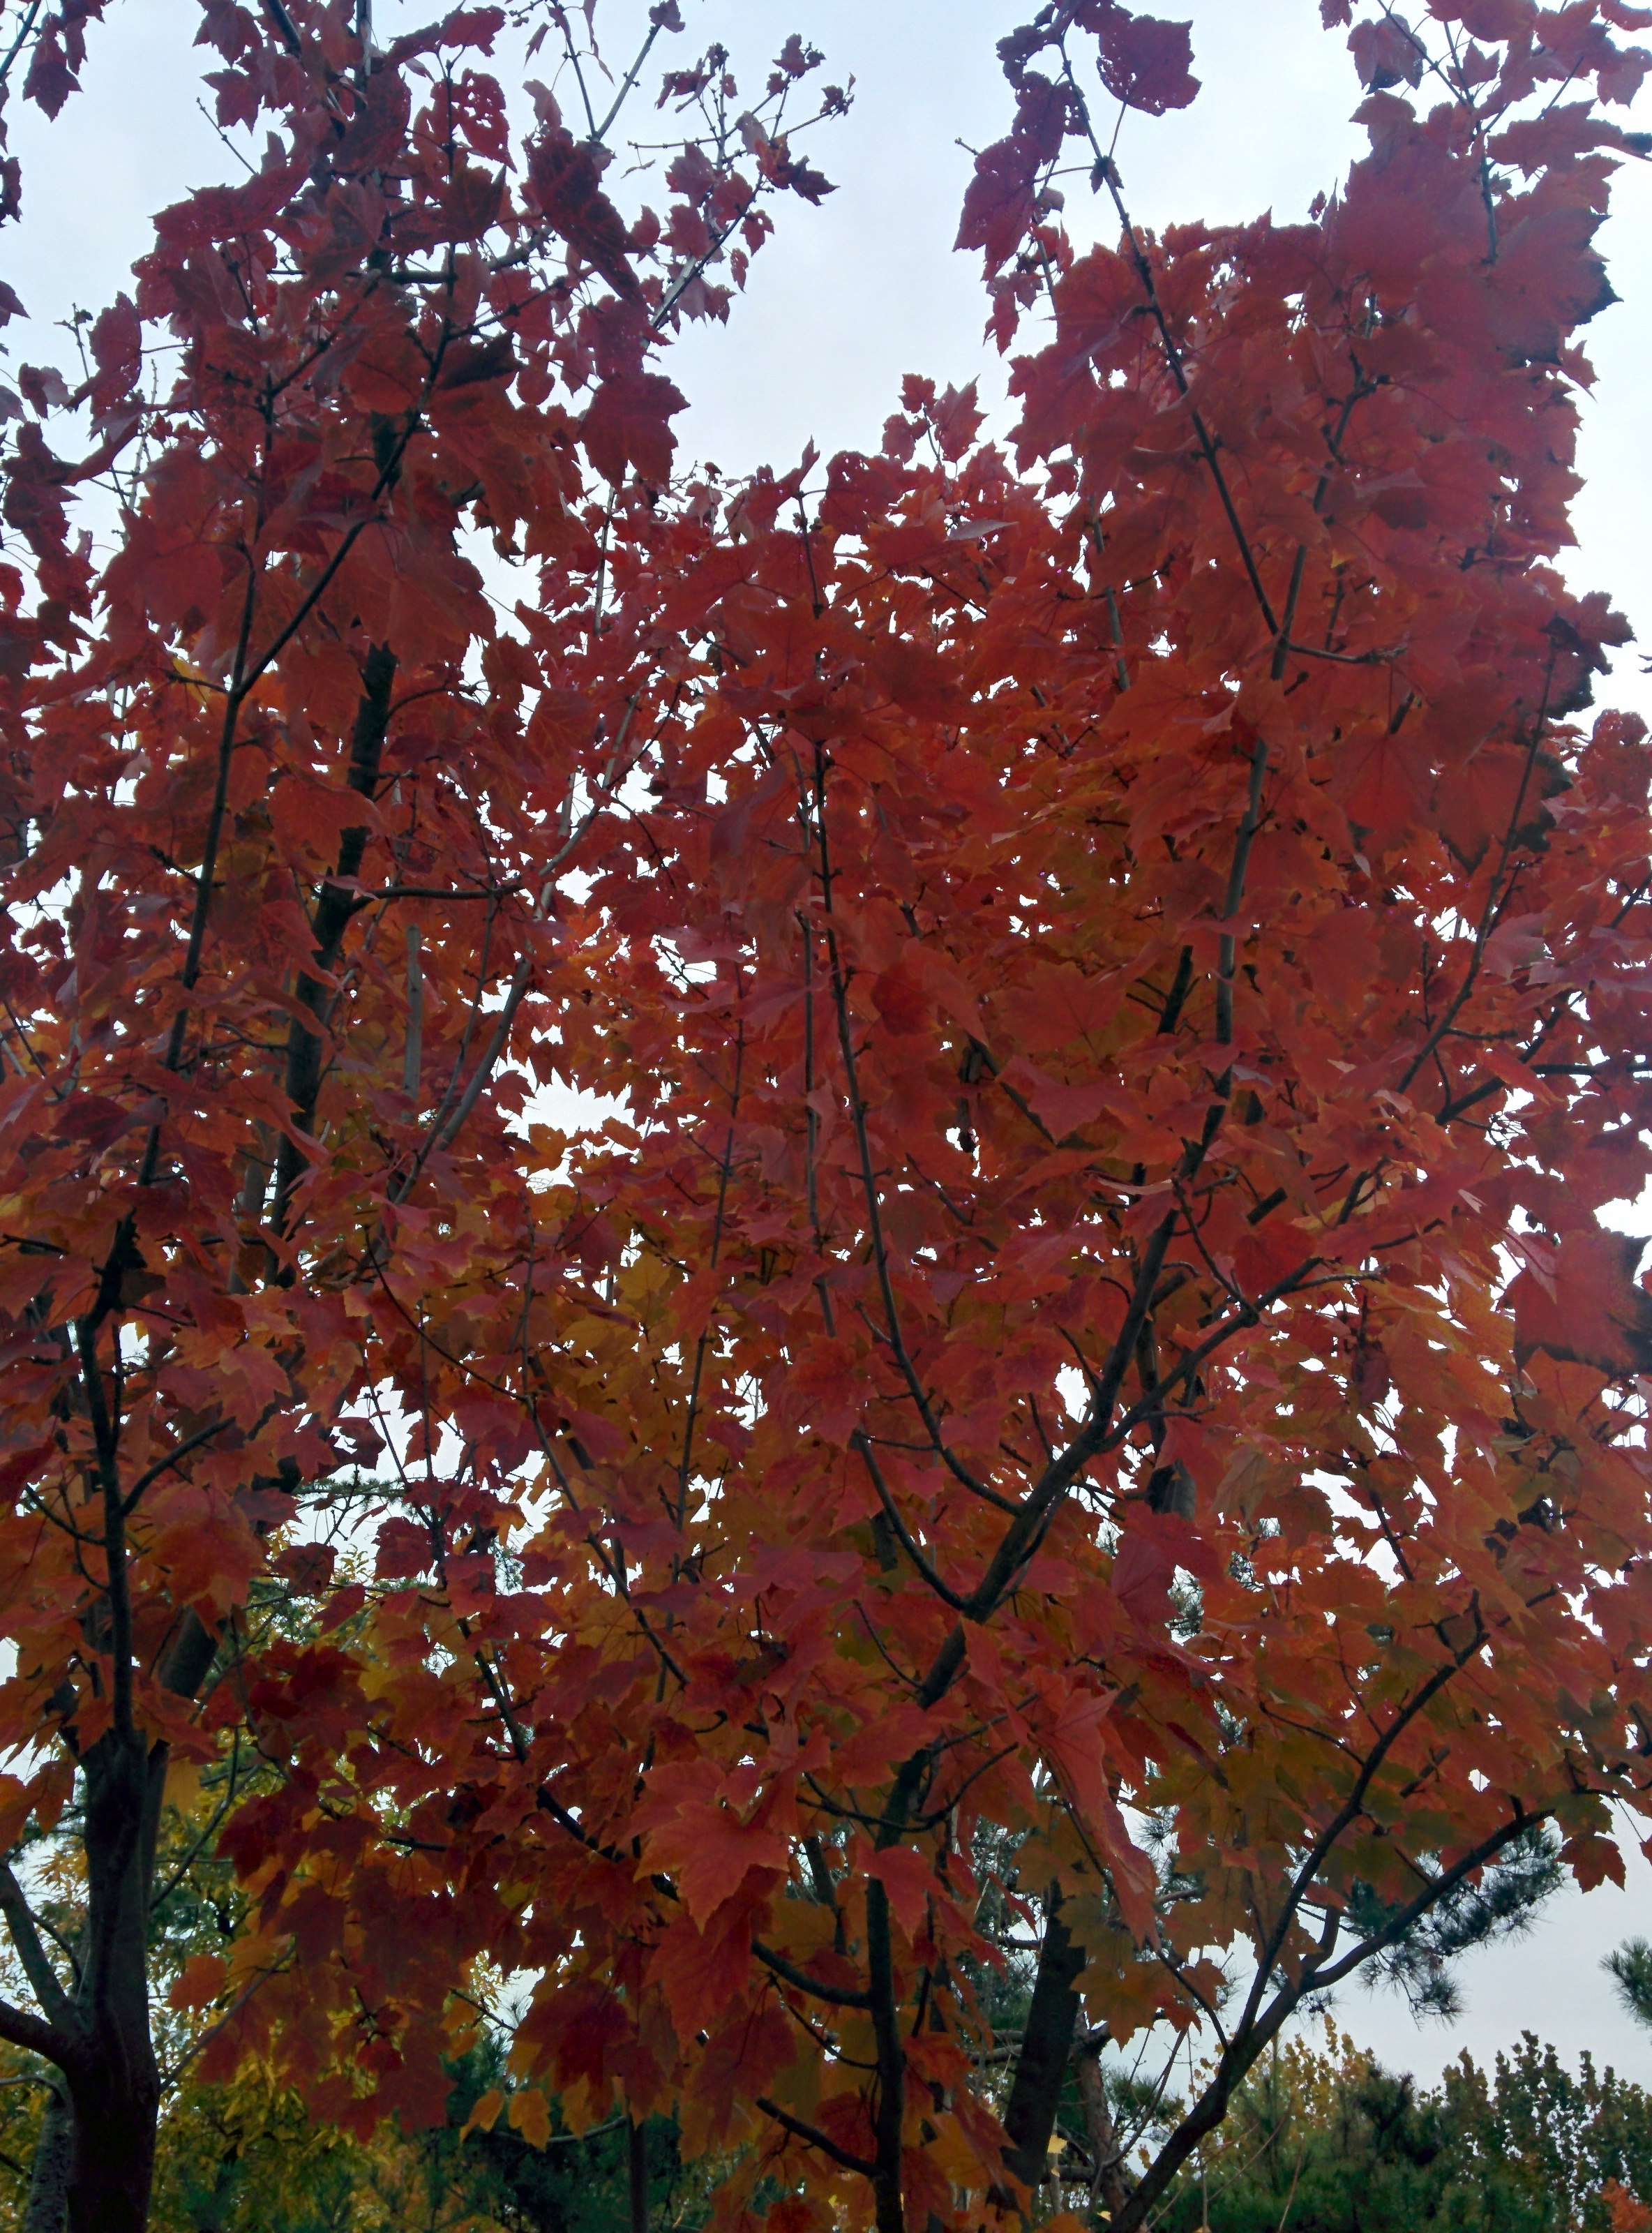 IMG_20151106_144258.jpg 붉은색 단풍이 든 넓적한 잎의 단풍종류... 꽃단풍